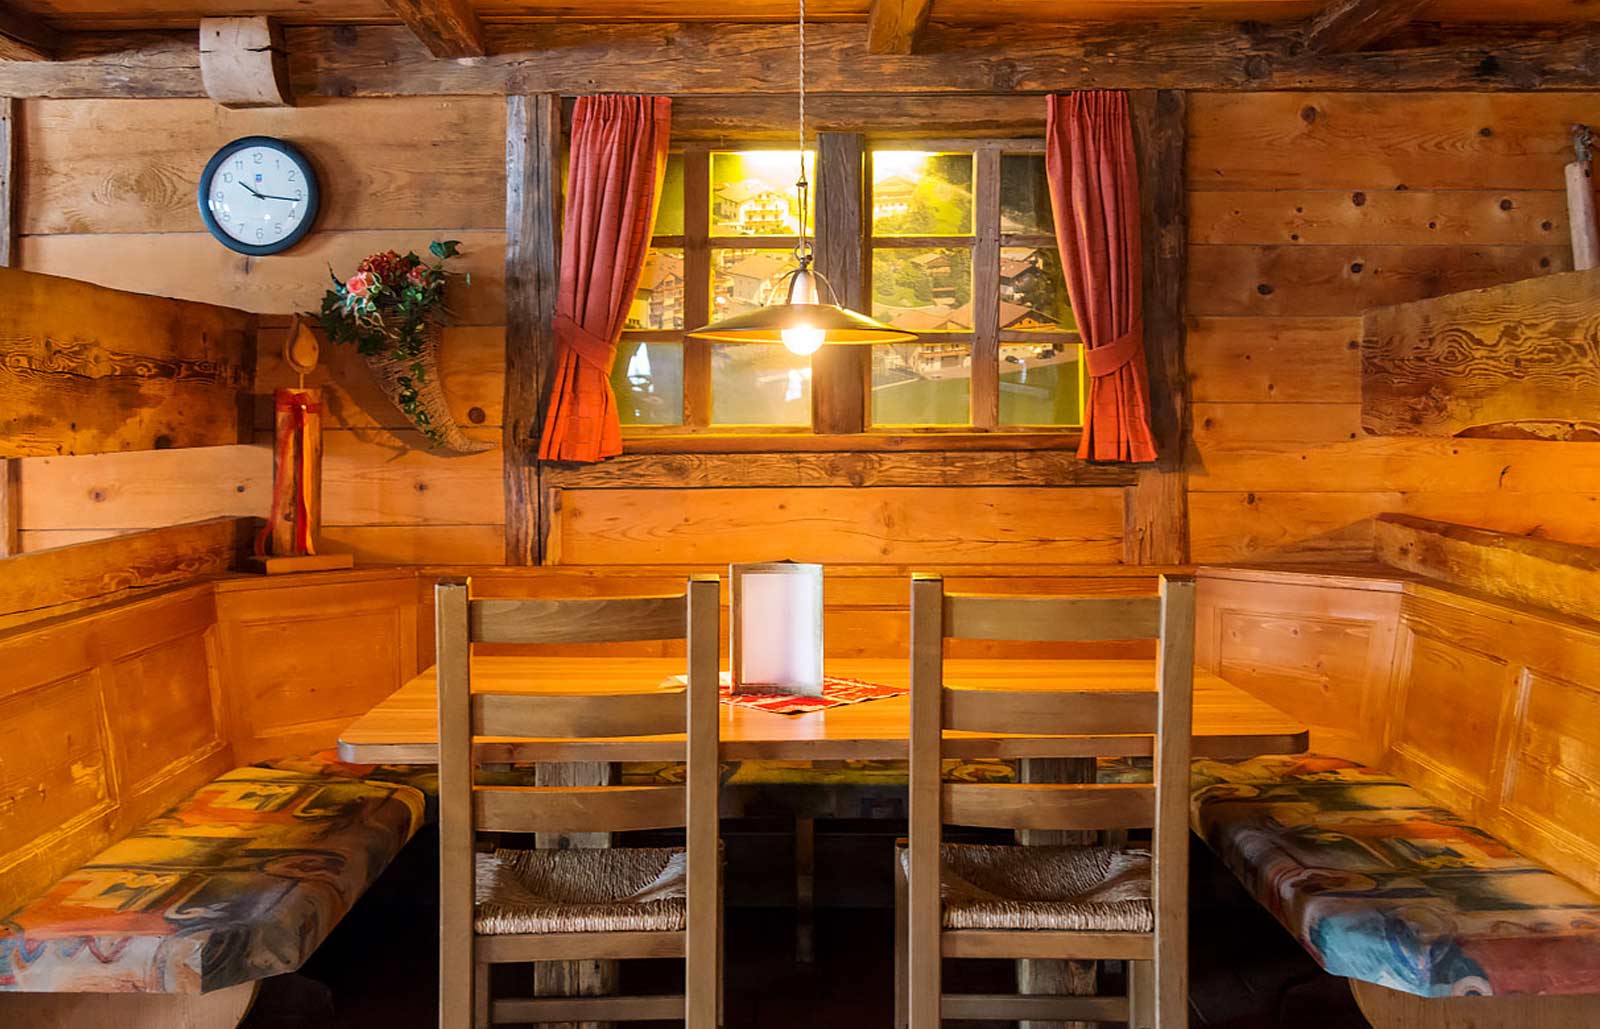 Una stube in legno, ambiente caratteristico dell'Alto Adige all'interno del Rinschba Pub.